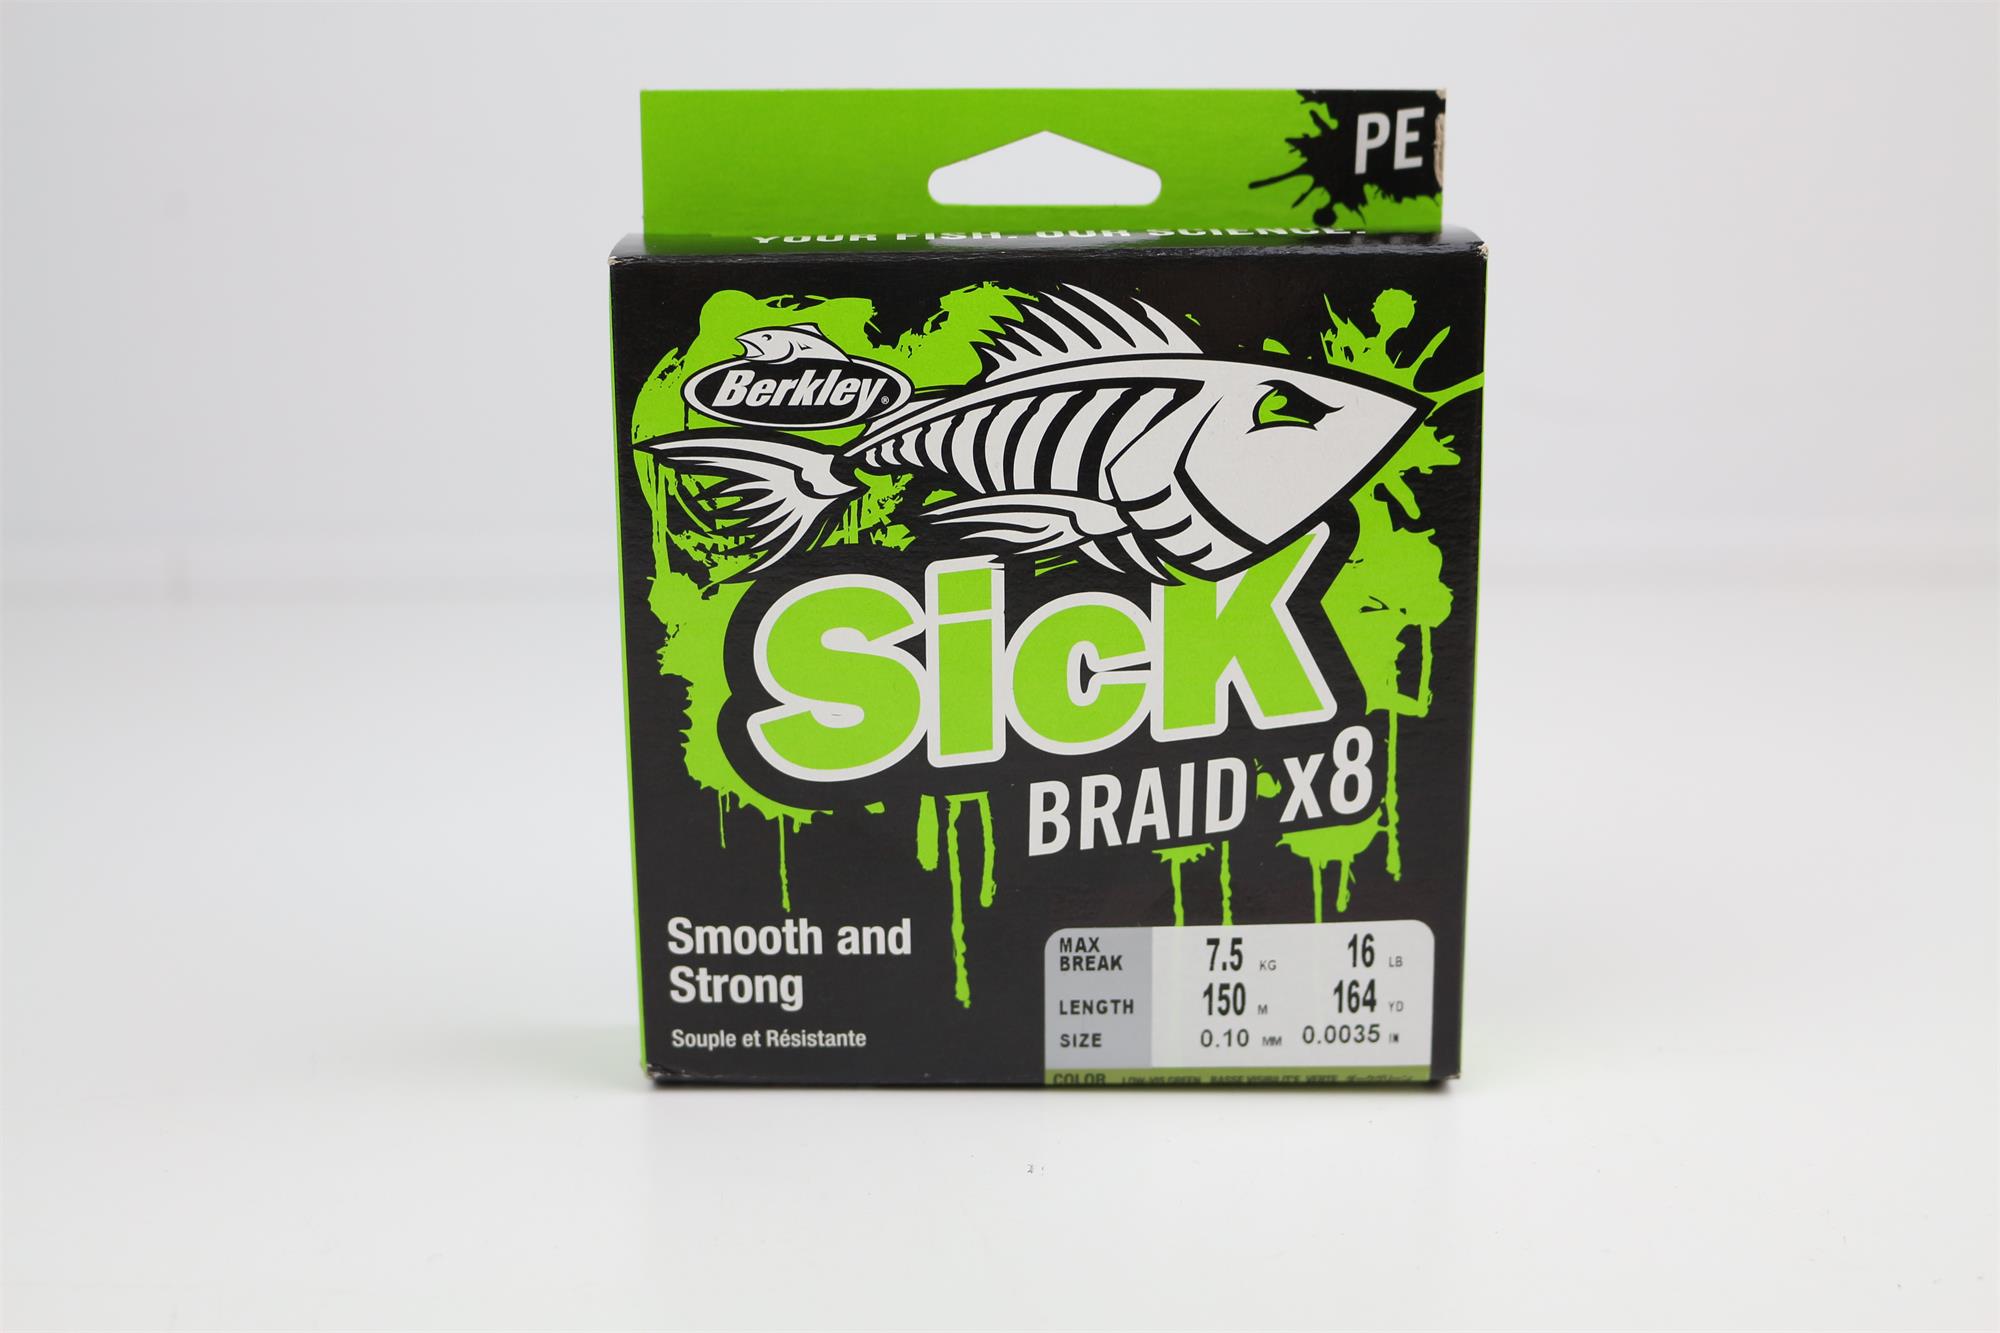 Berkley Sick 2in1 Braid X8 & 100% Fluorocarbon - Veals Mail Order